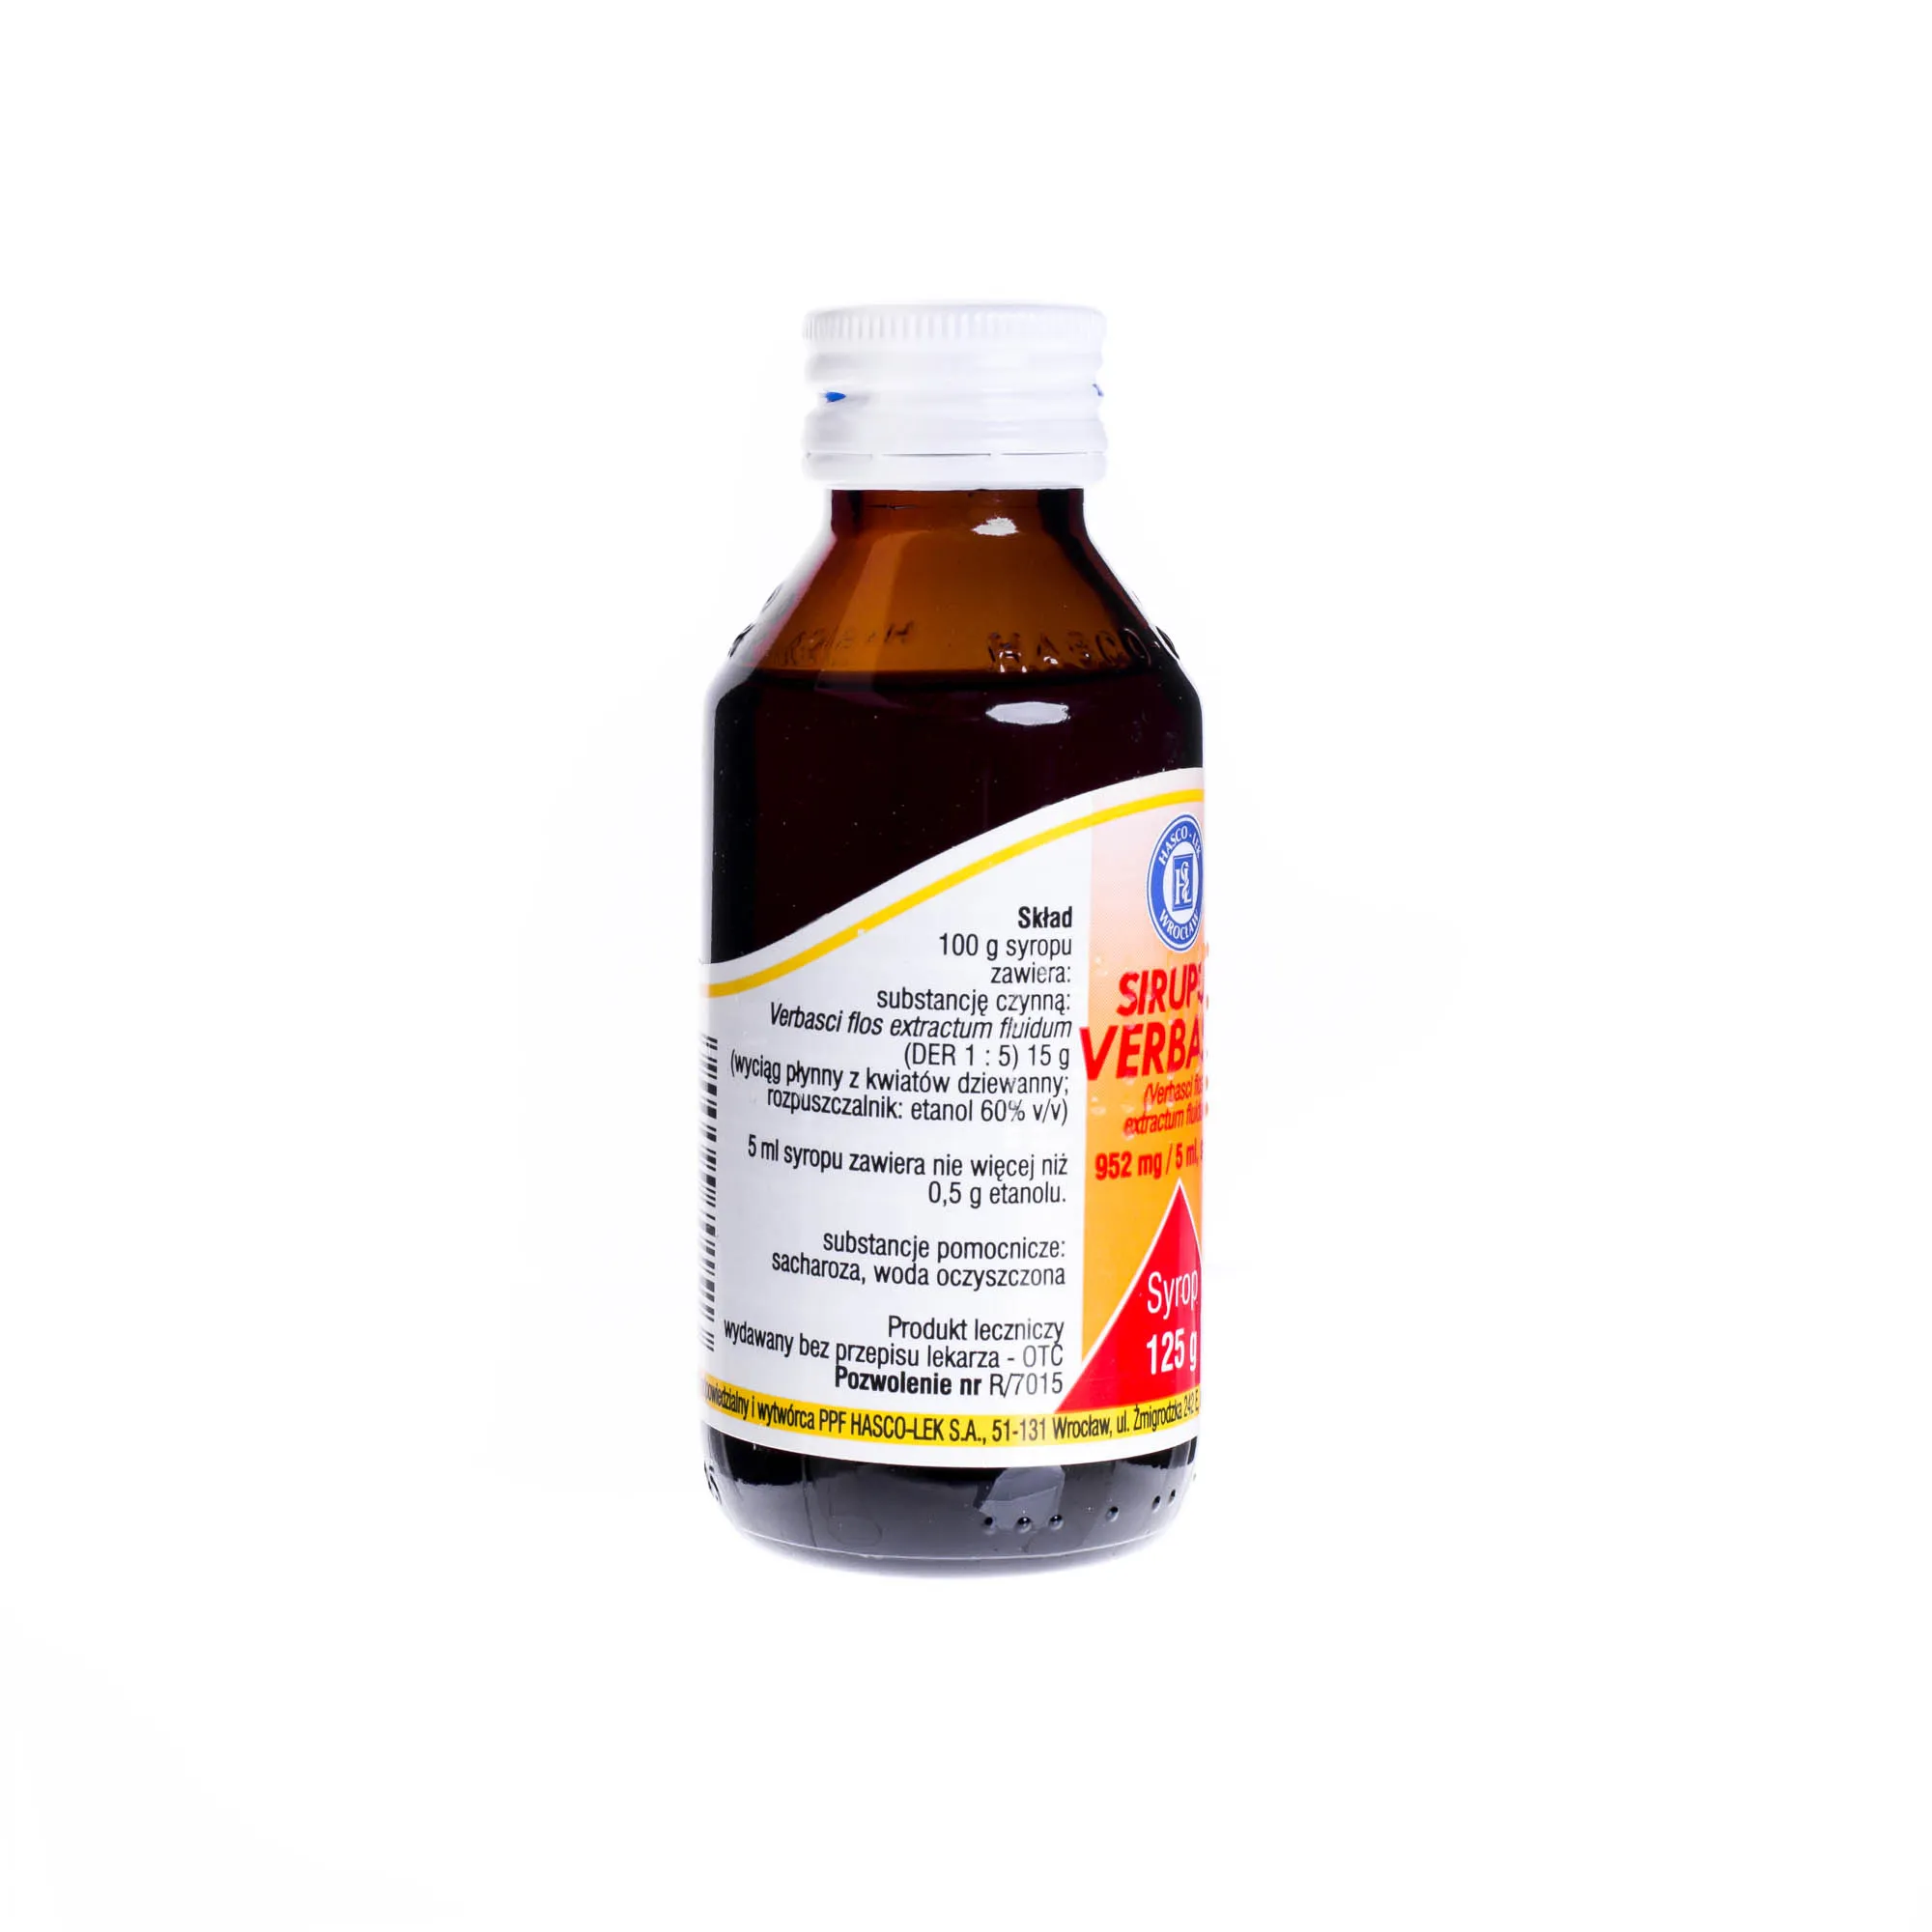 Sirupus Verbasci 952mg/5 ml - Tradycyjny produkt leczniczy stosowany w leczeniu bólu gardła, 125 g 